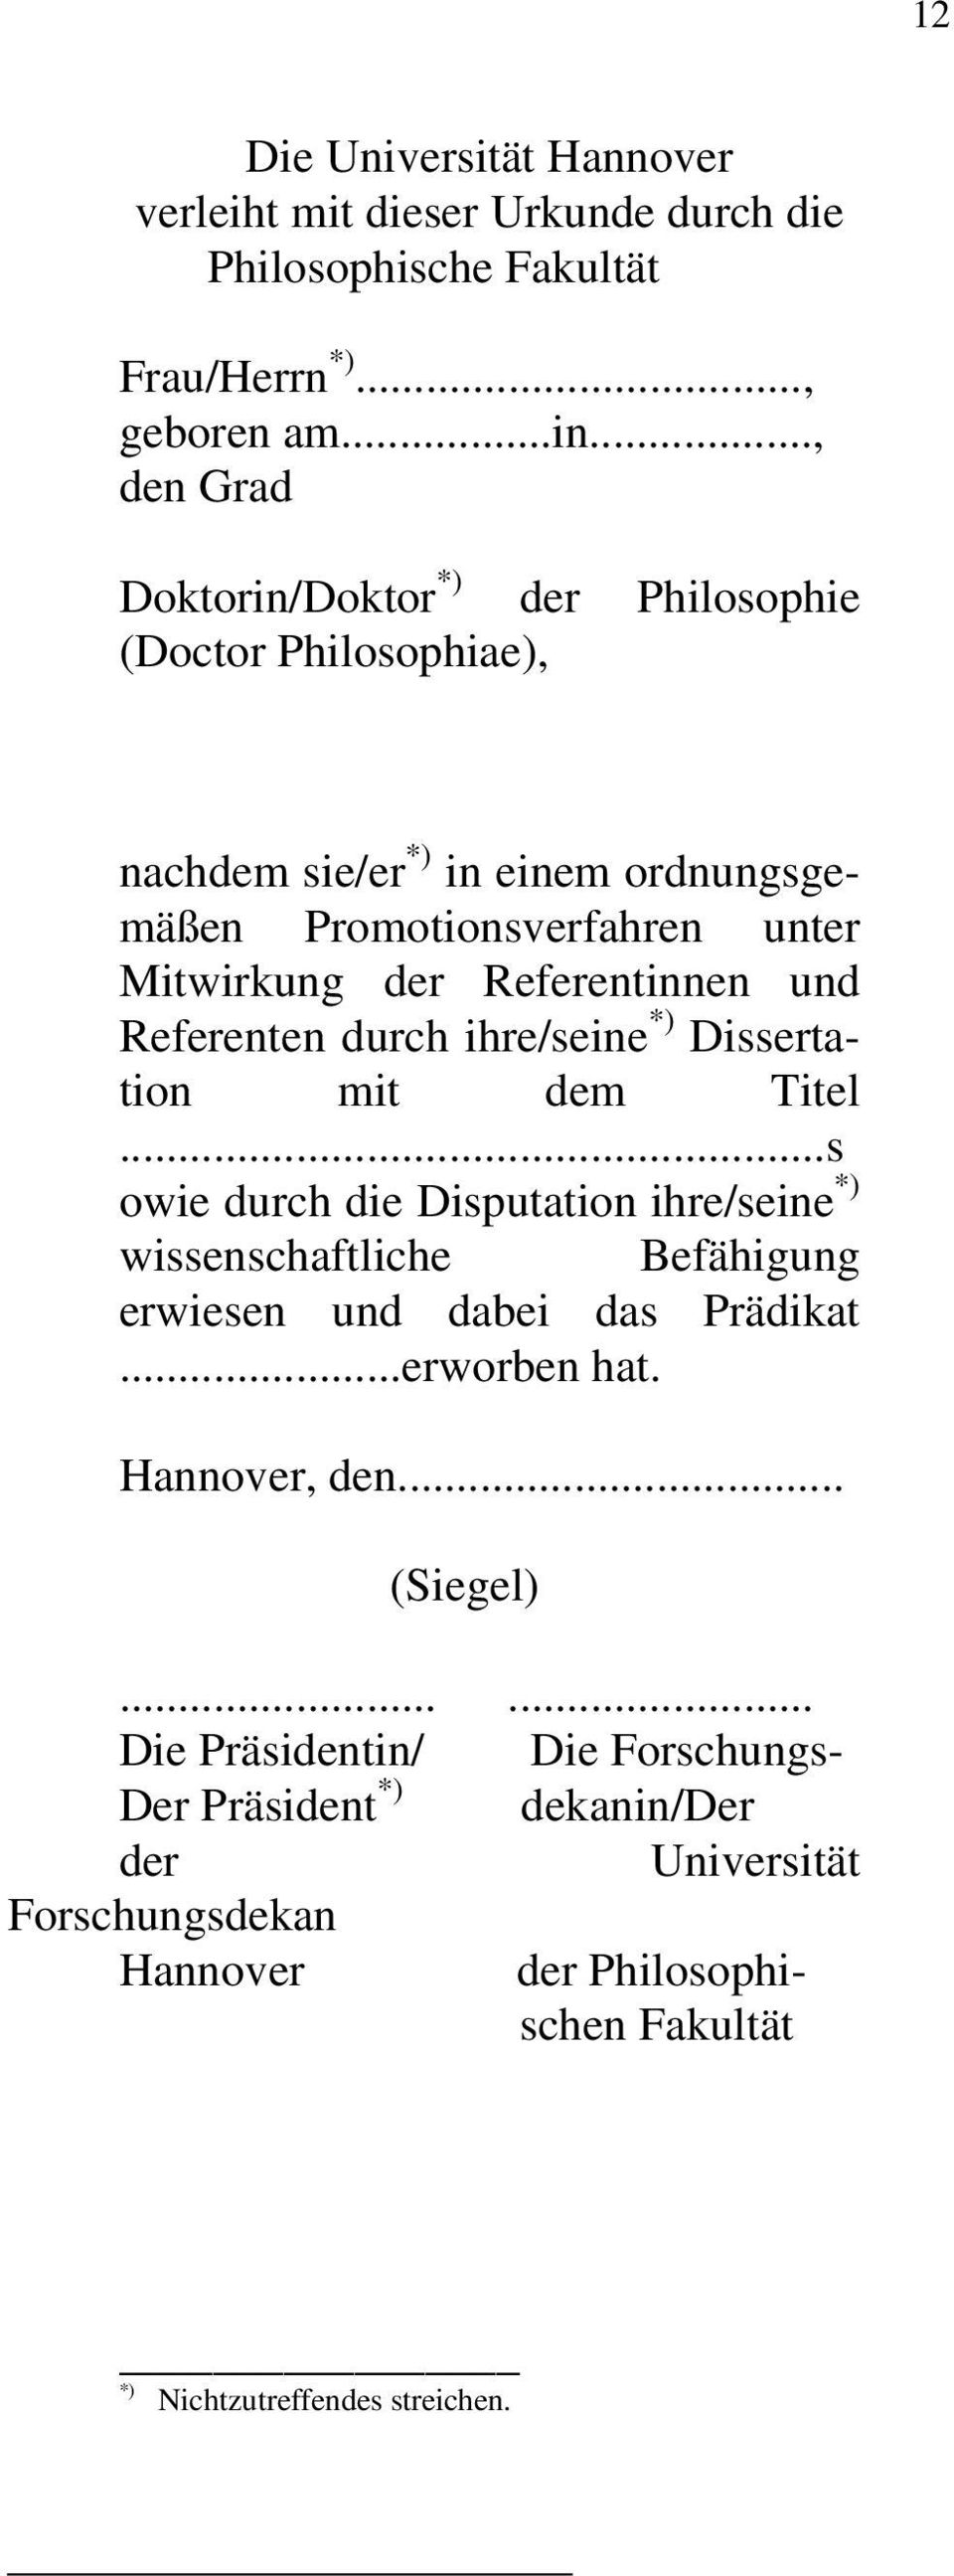 Referentinnen und Referenten durch ihre/seine *) Dissertation mit dem Titel.